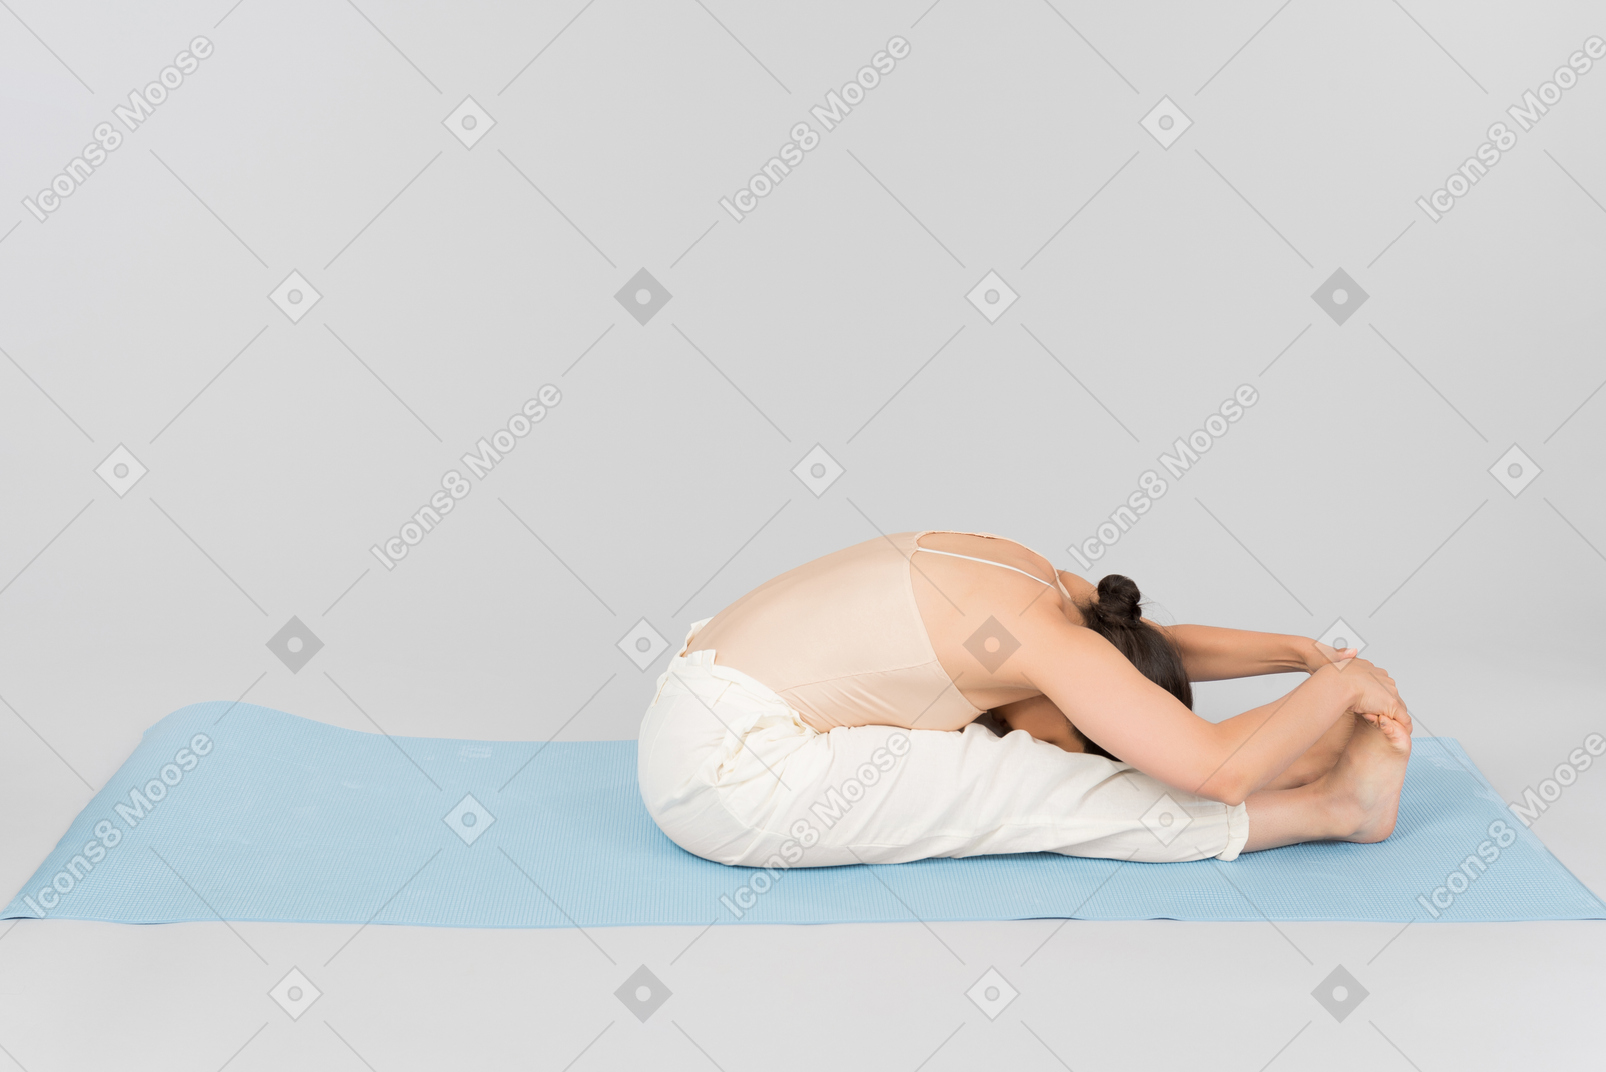 Junge indische frau, die auf der gefalteten yogamatte sitzt